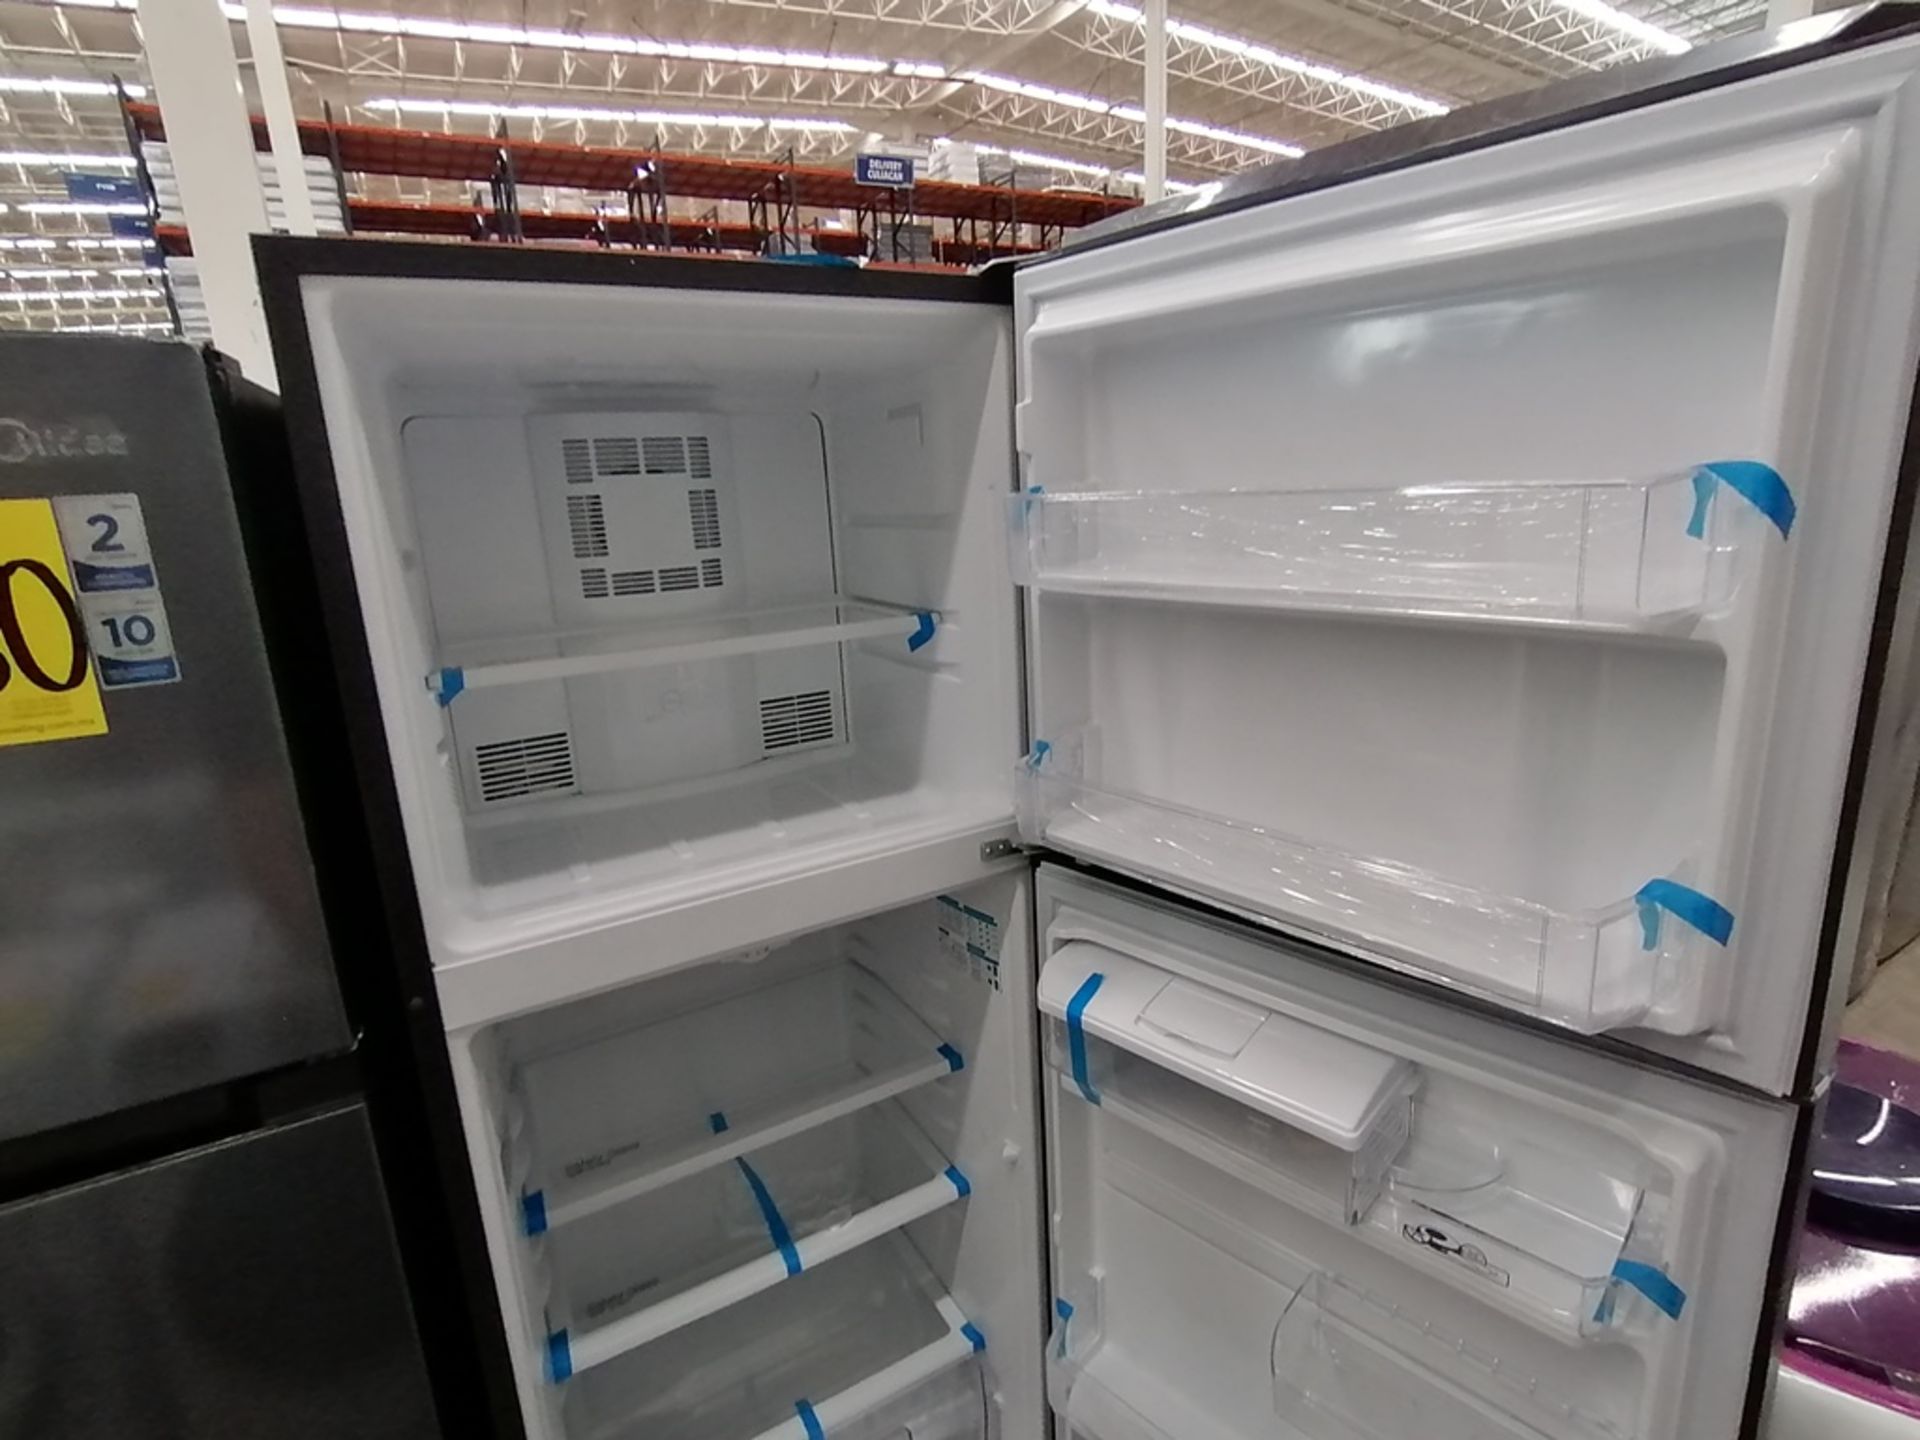 Lote de 2 refrigeradores incluye: 1 Refrigerador, Marca Midea, Modelo MRTN09G2NCS, Serie 341B261870 - Image 13 of 15